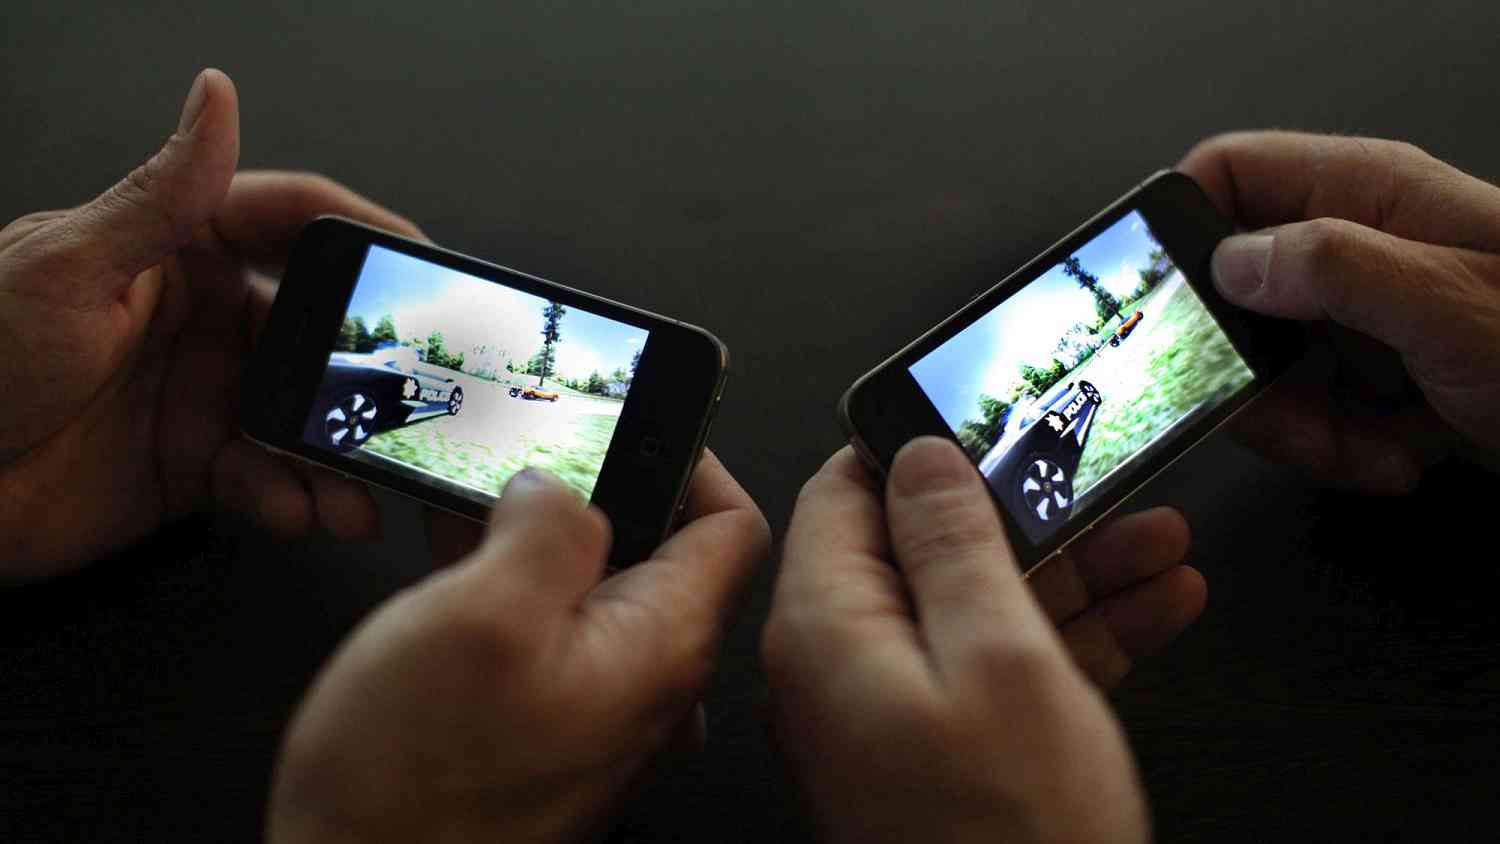 Přeroste mobilní e-gaming klasické profesionální hraní?